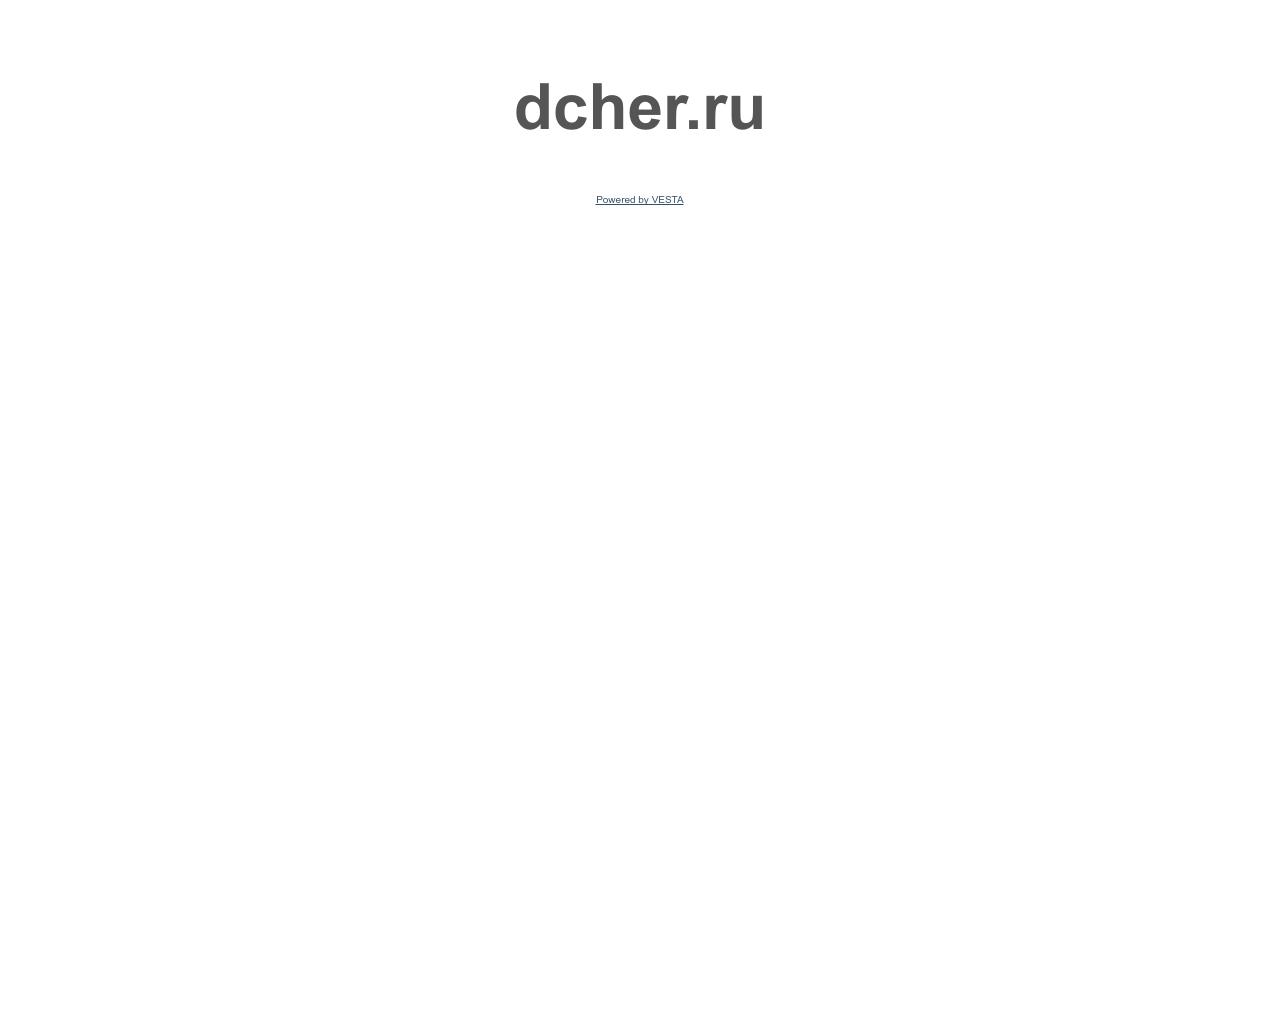 Изображение сайта dcher.ru в разрешении 1280x1024